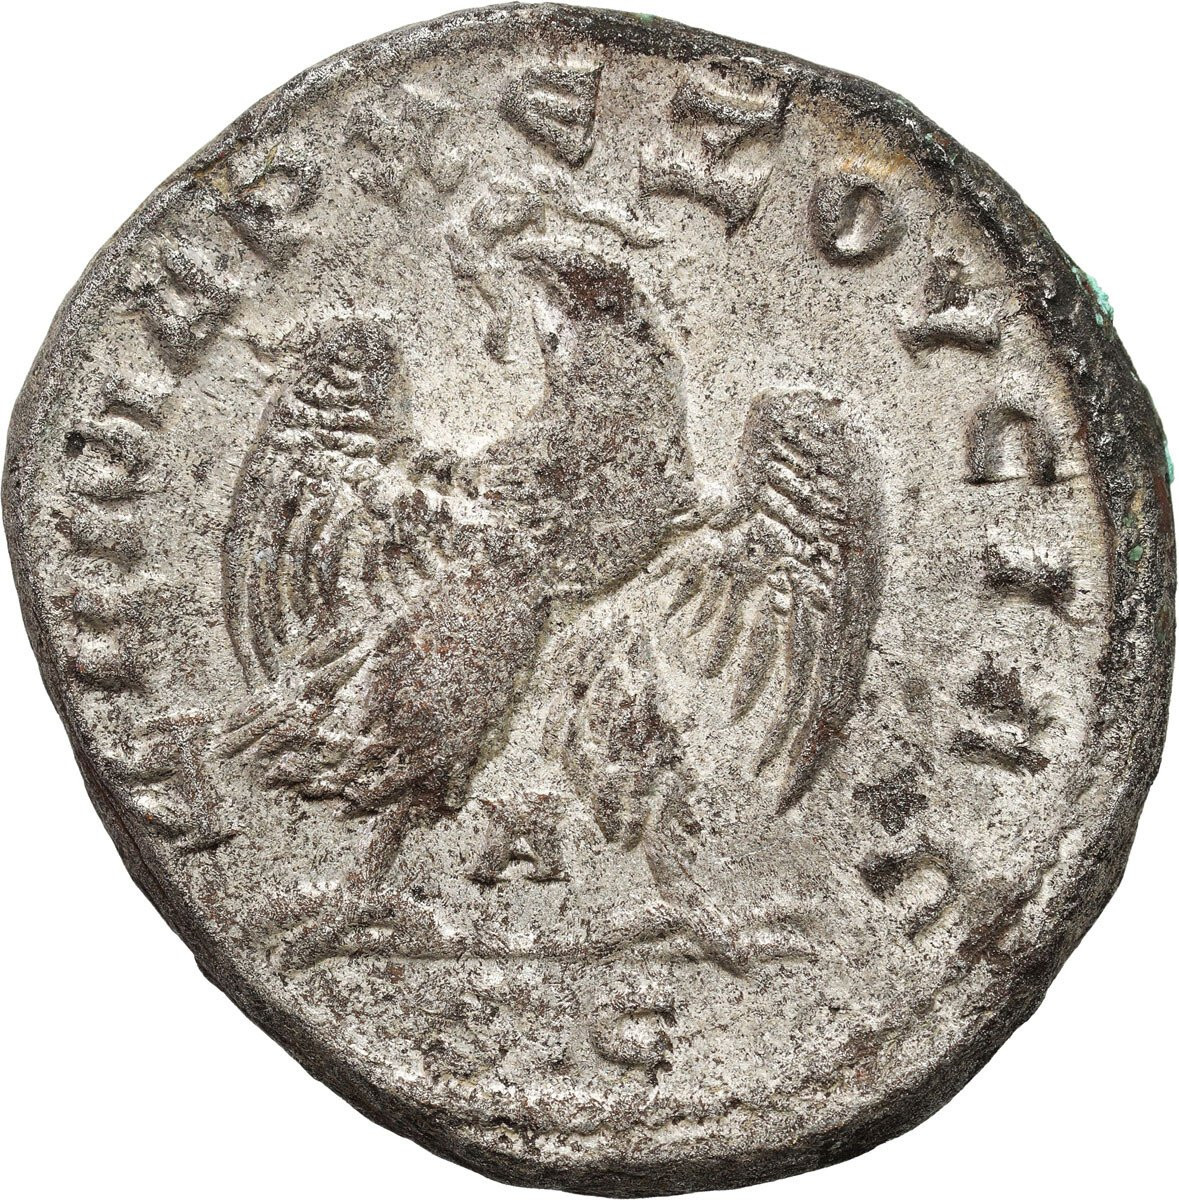 Rzym prowincjonalny. Trebonianus Gallus (251-253). Tetradrachma – Antiochia